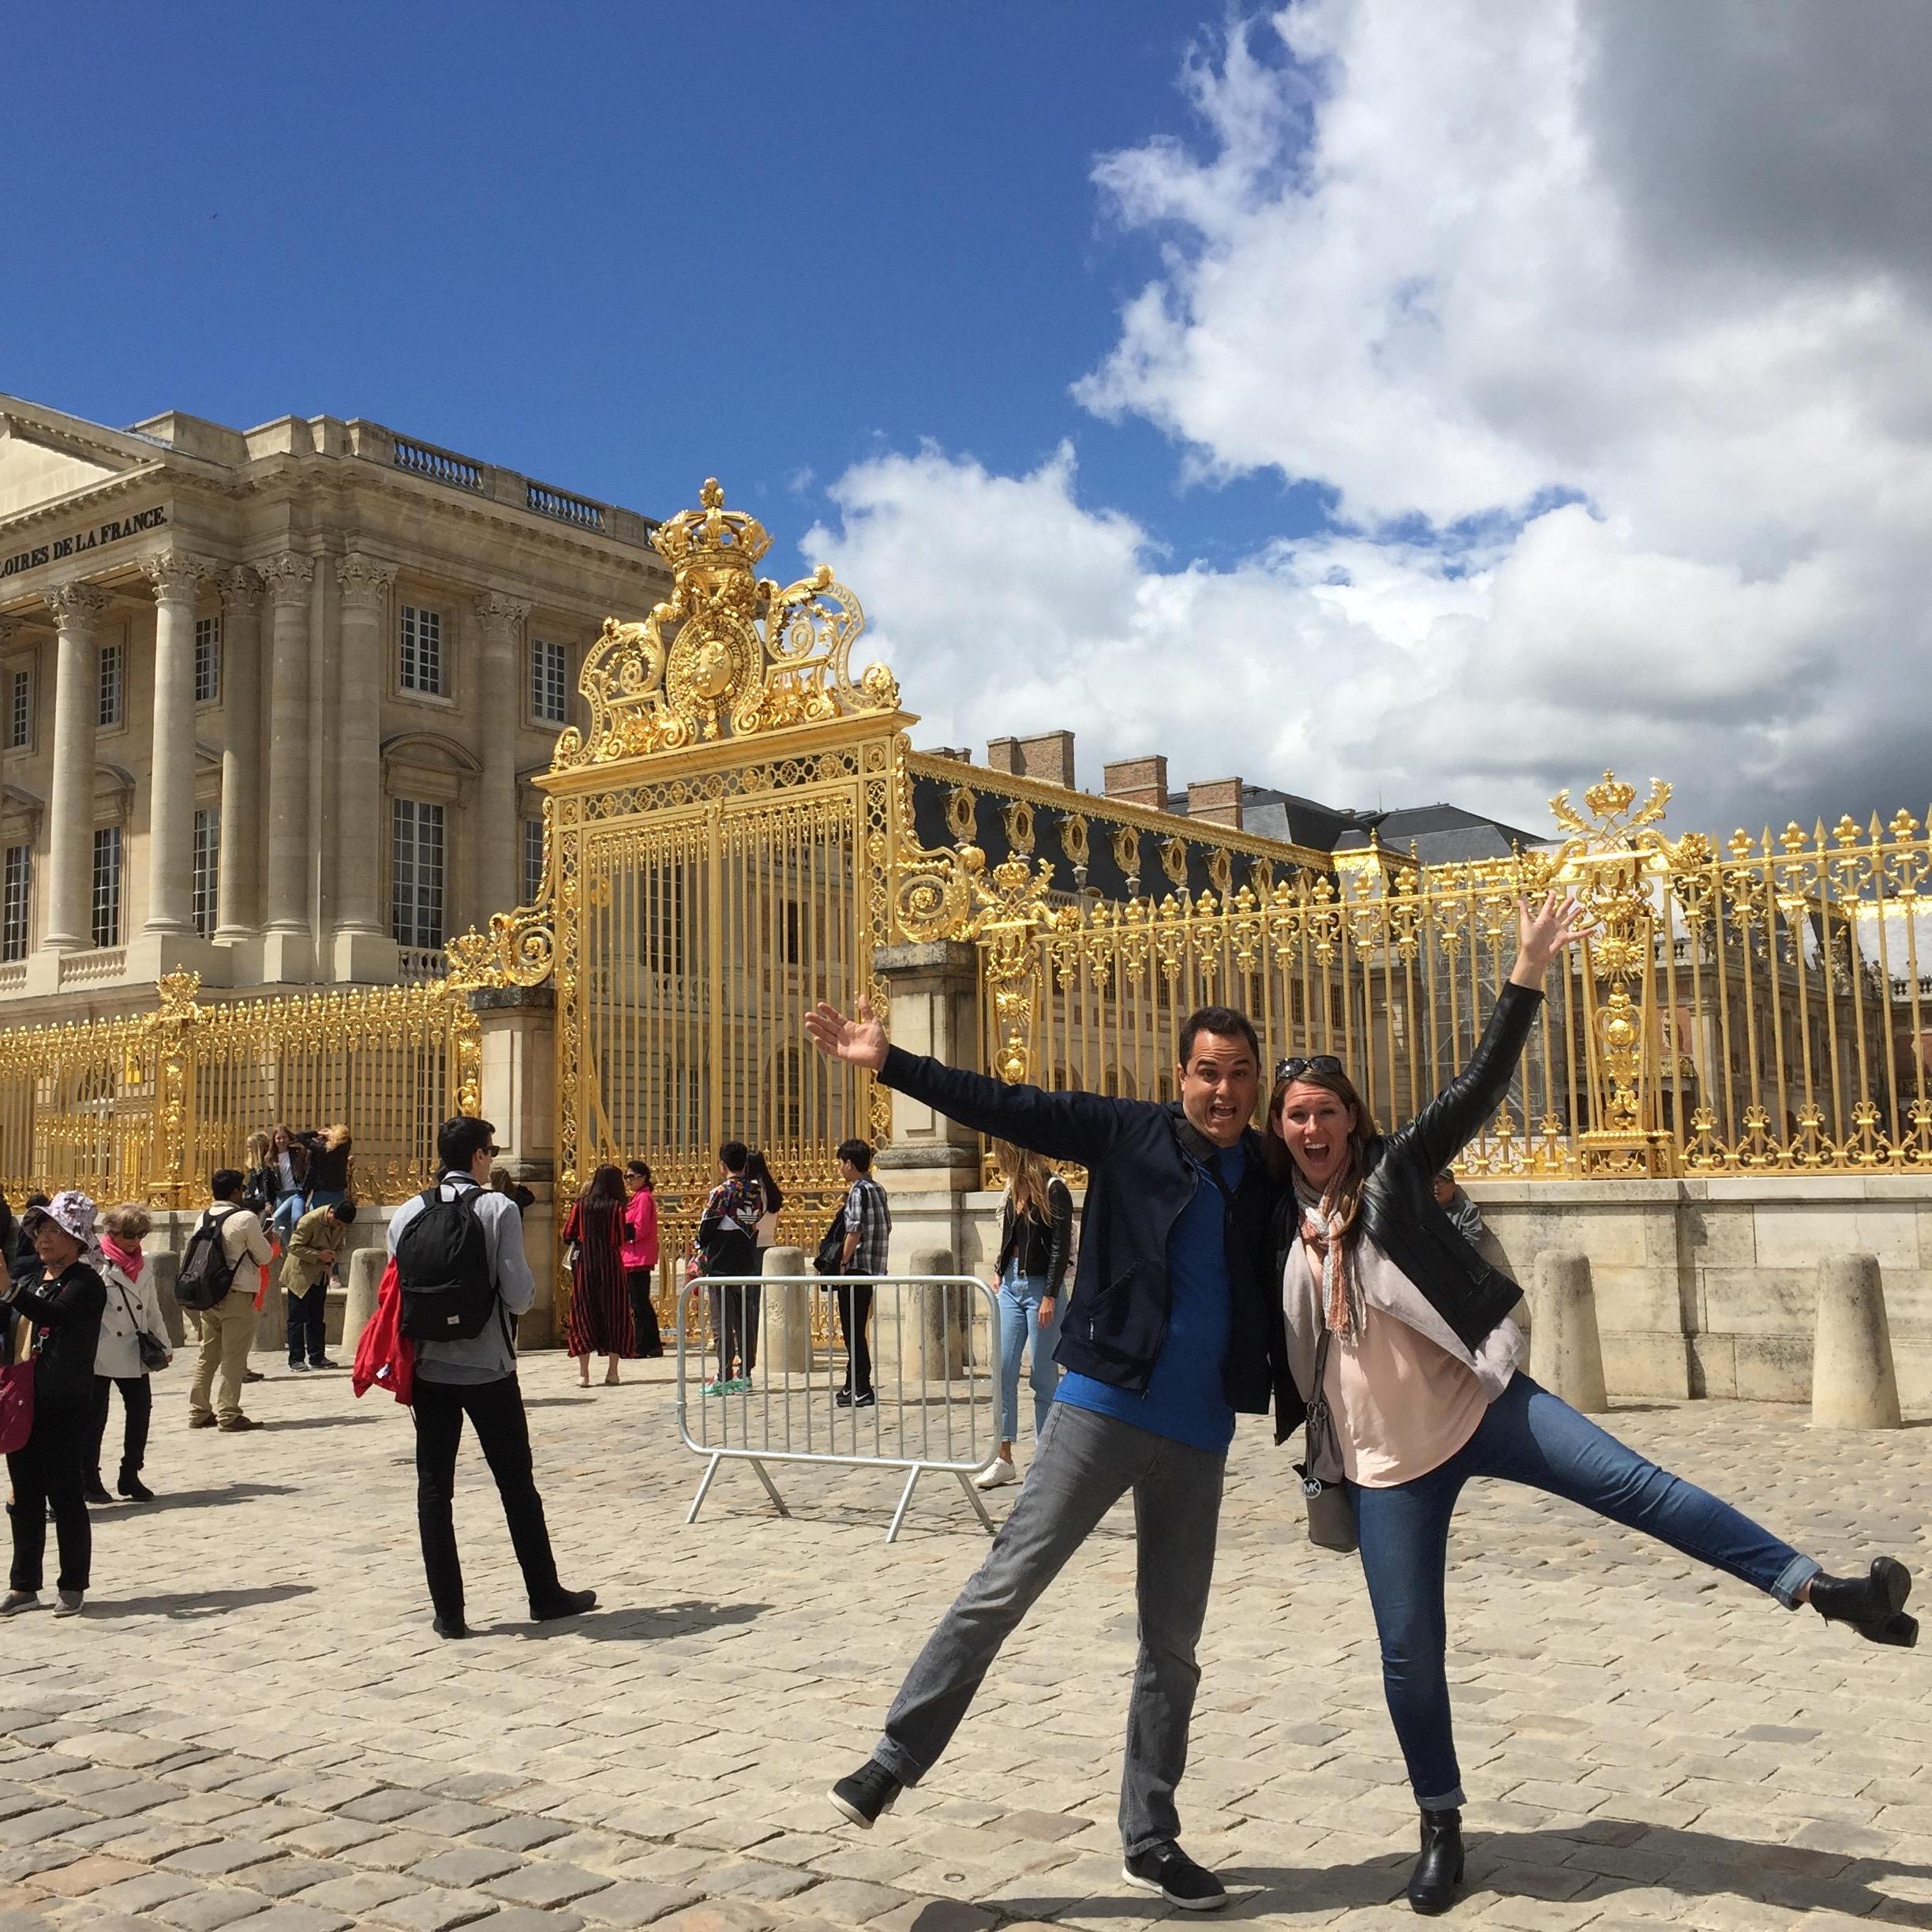 Versailles
France, May 2017